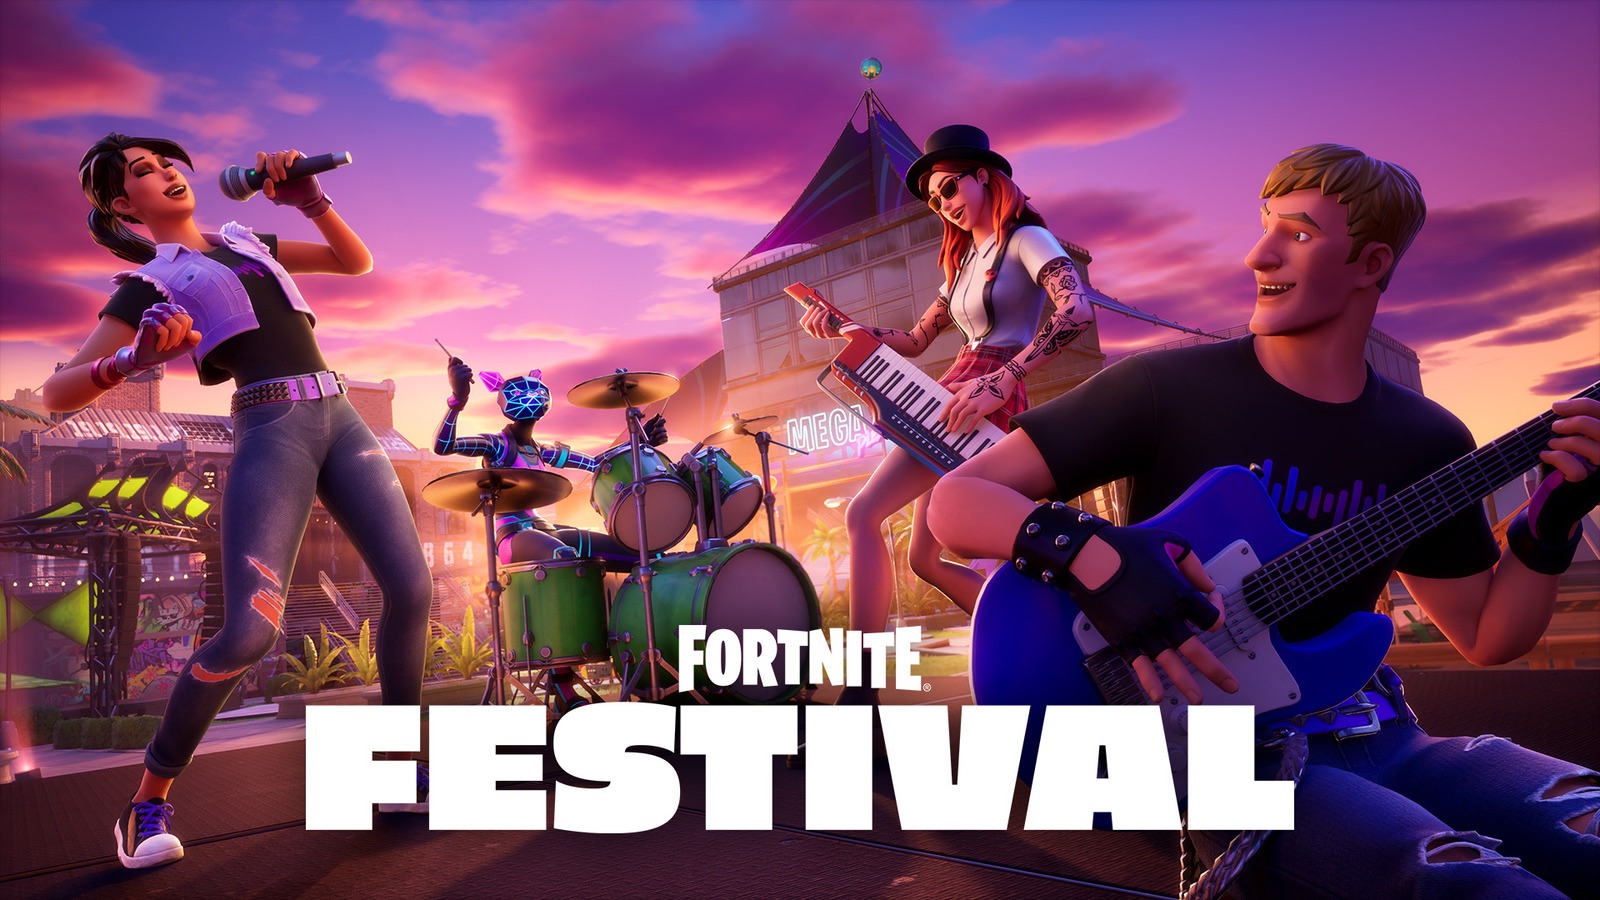 Is Fortnite Festival gratis te spelen?